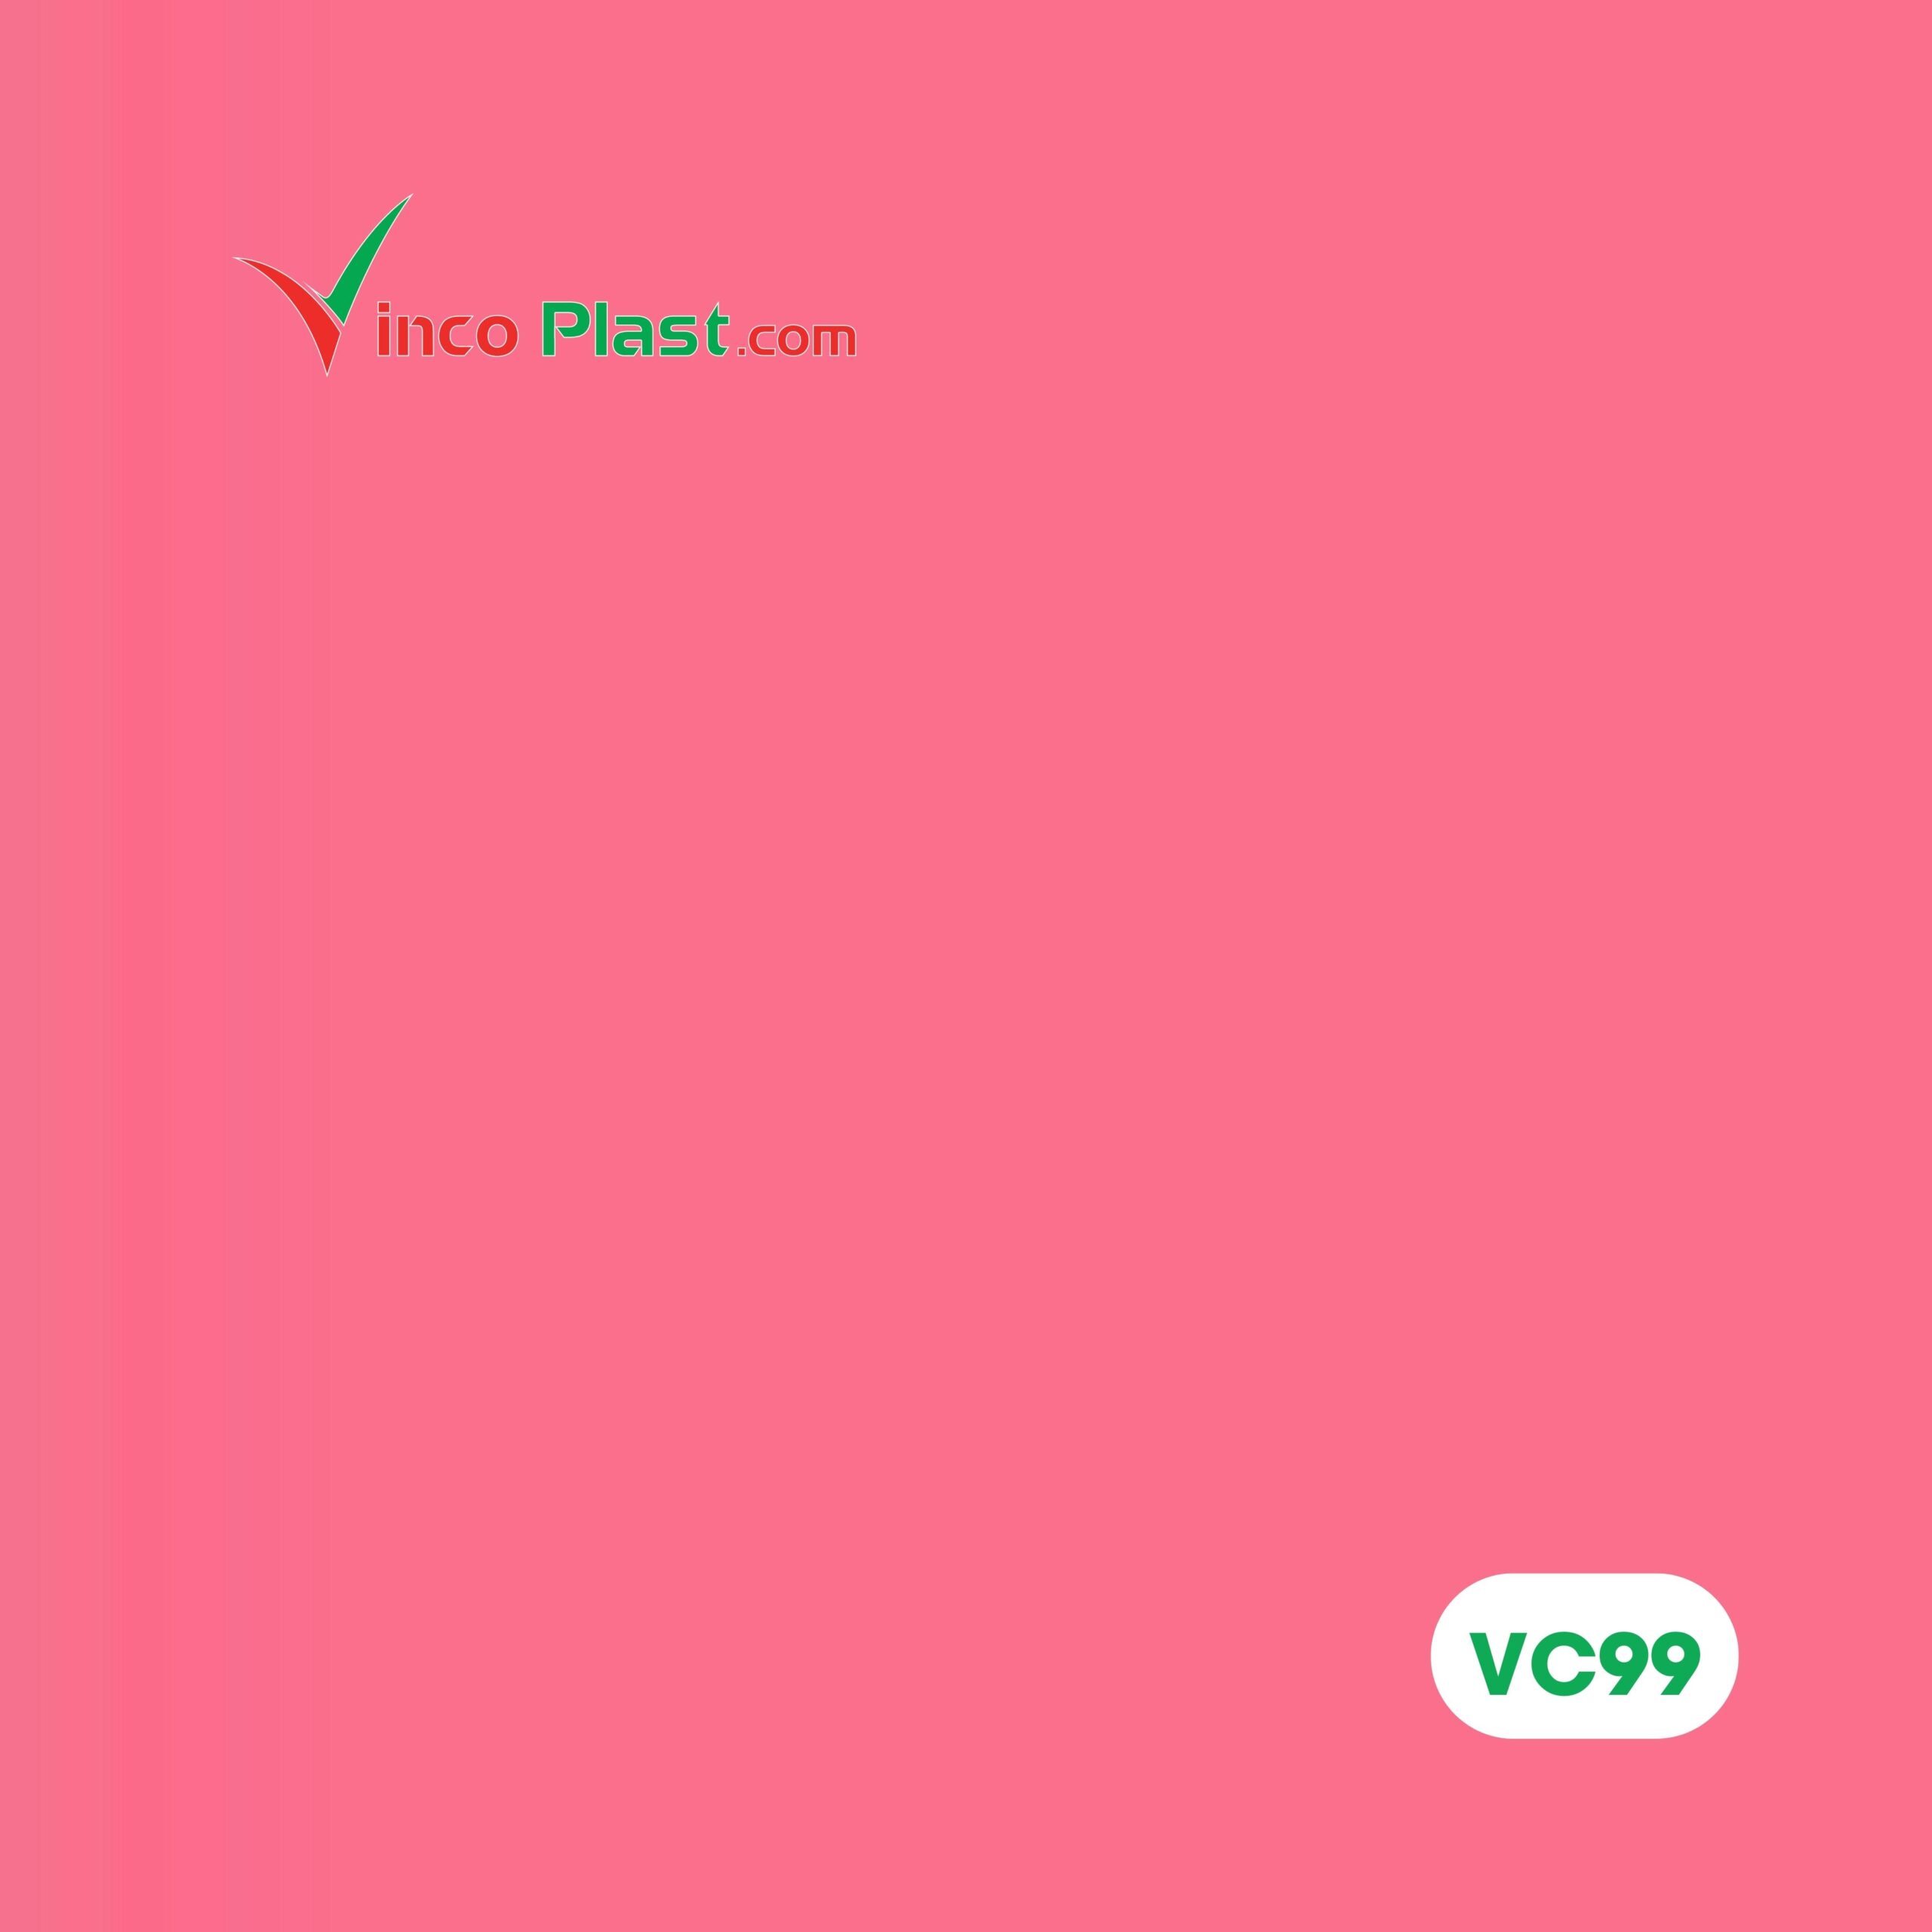 Map màu tấm nhựa nội thất Vincoplast VC99